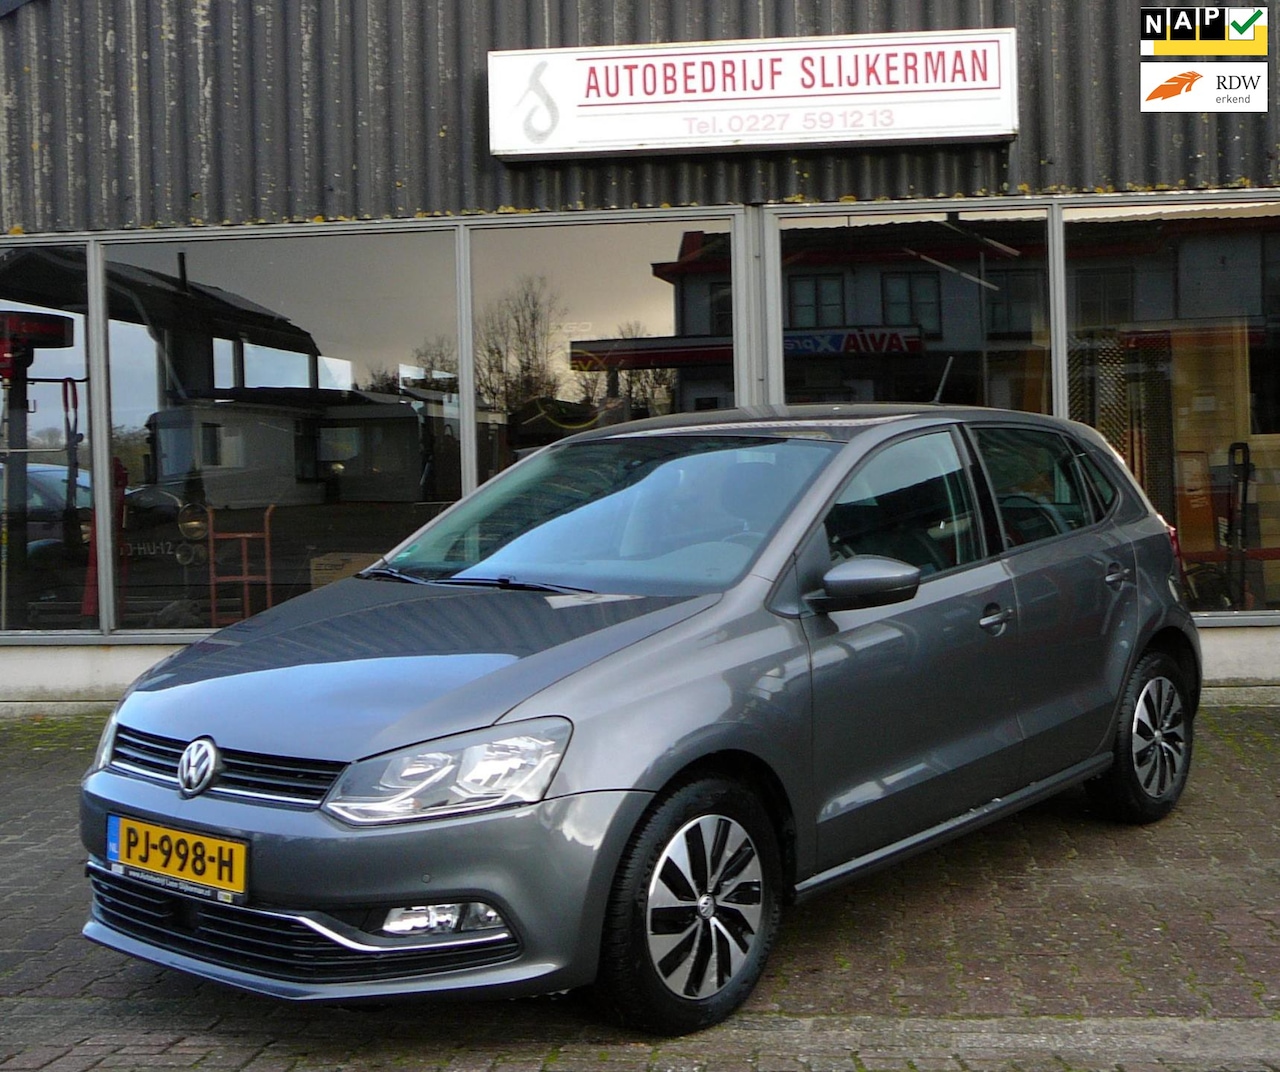 Verfijnen specificeren Benadering Volkswagen Polo 1.4 TDI Highline - AUTOMAAT 2015 Diesel - Occasion te koop  op AutoWereld.nl